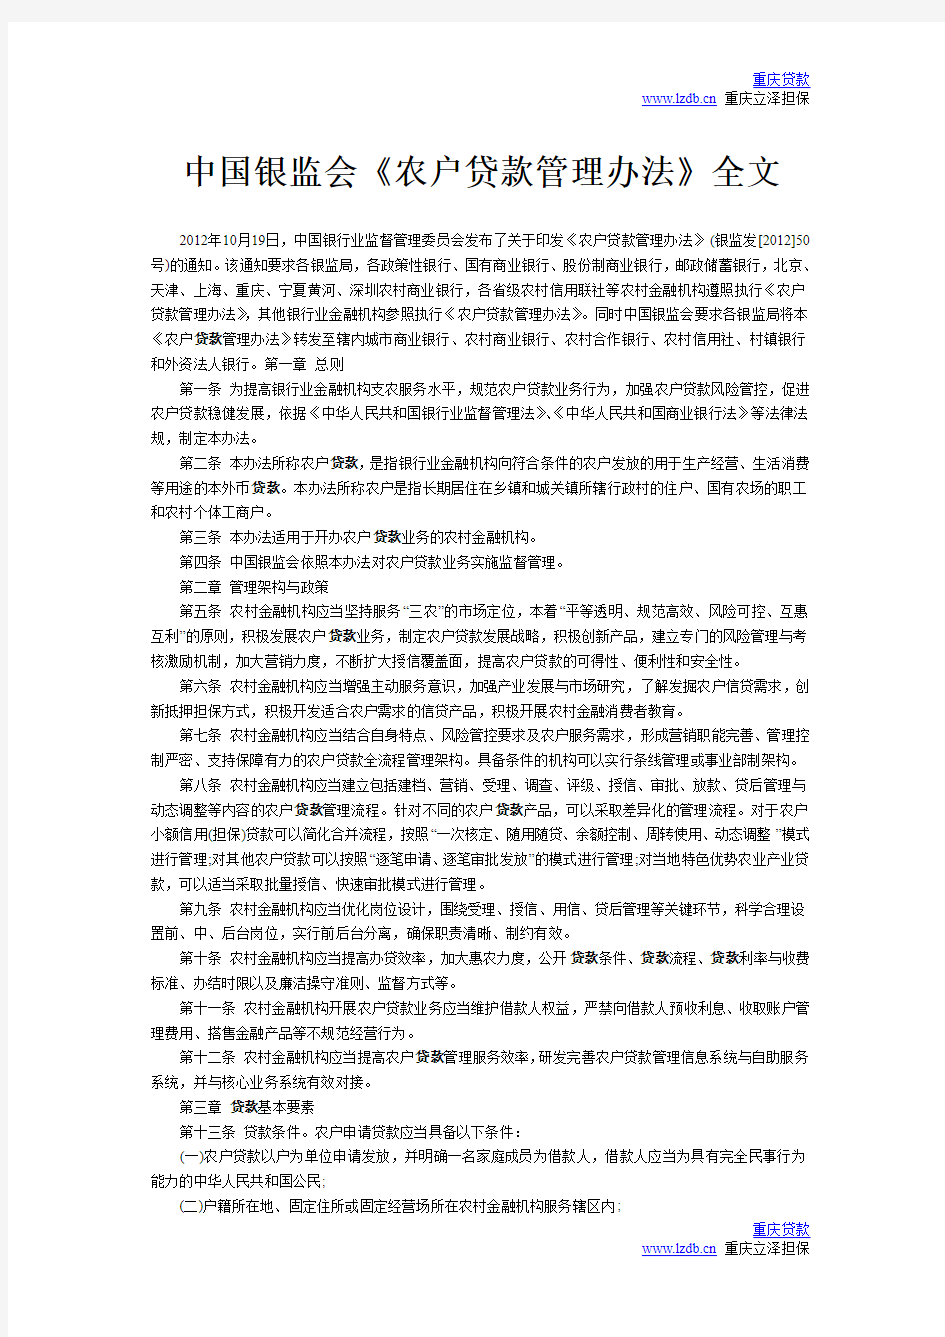 中国银监会《农户贷款管理办法》全文